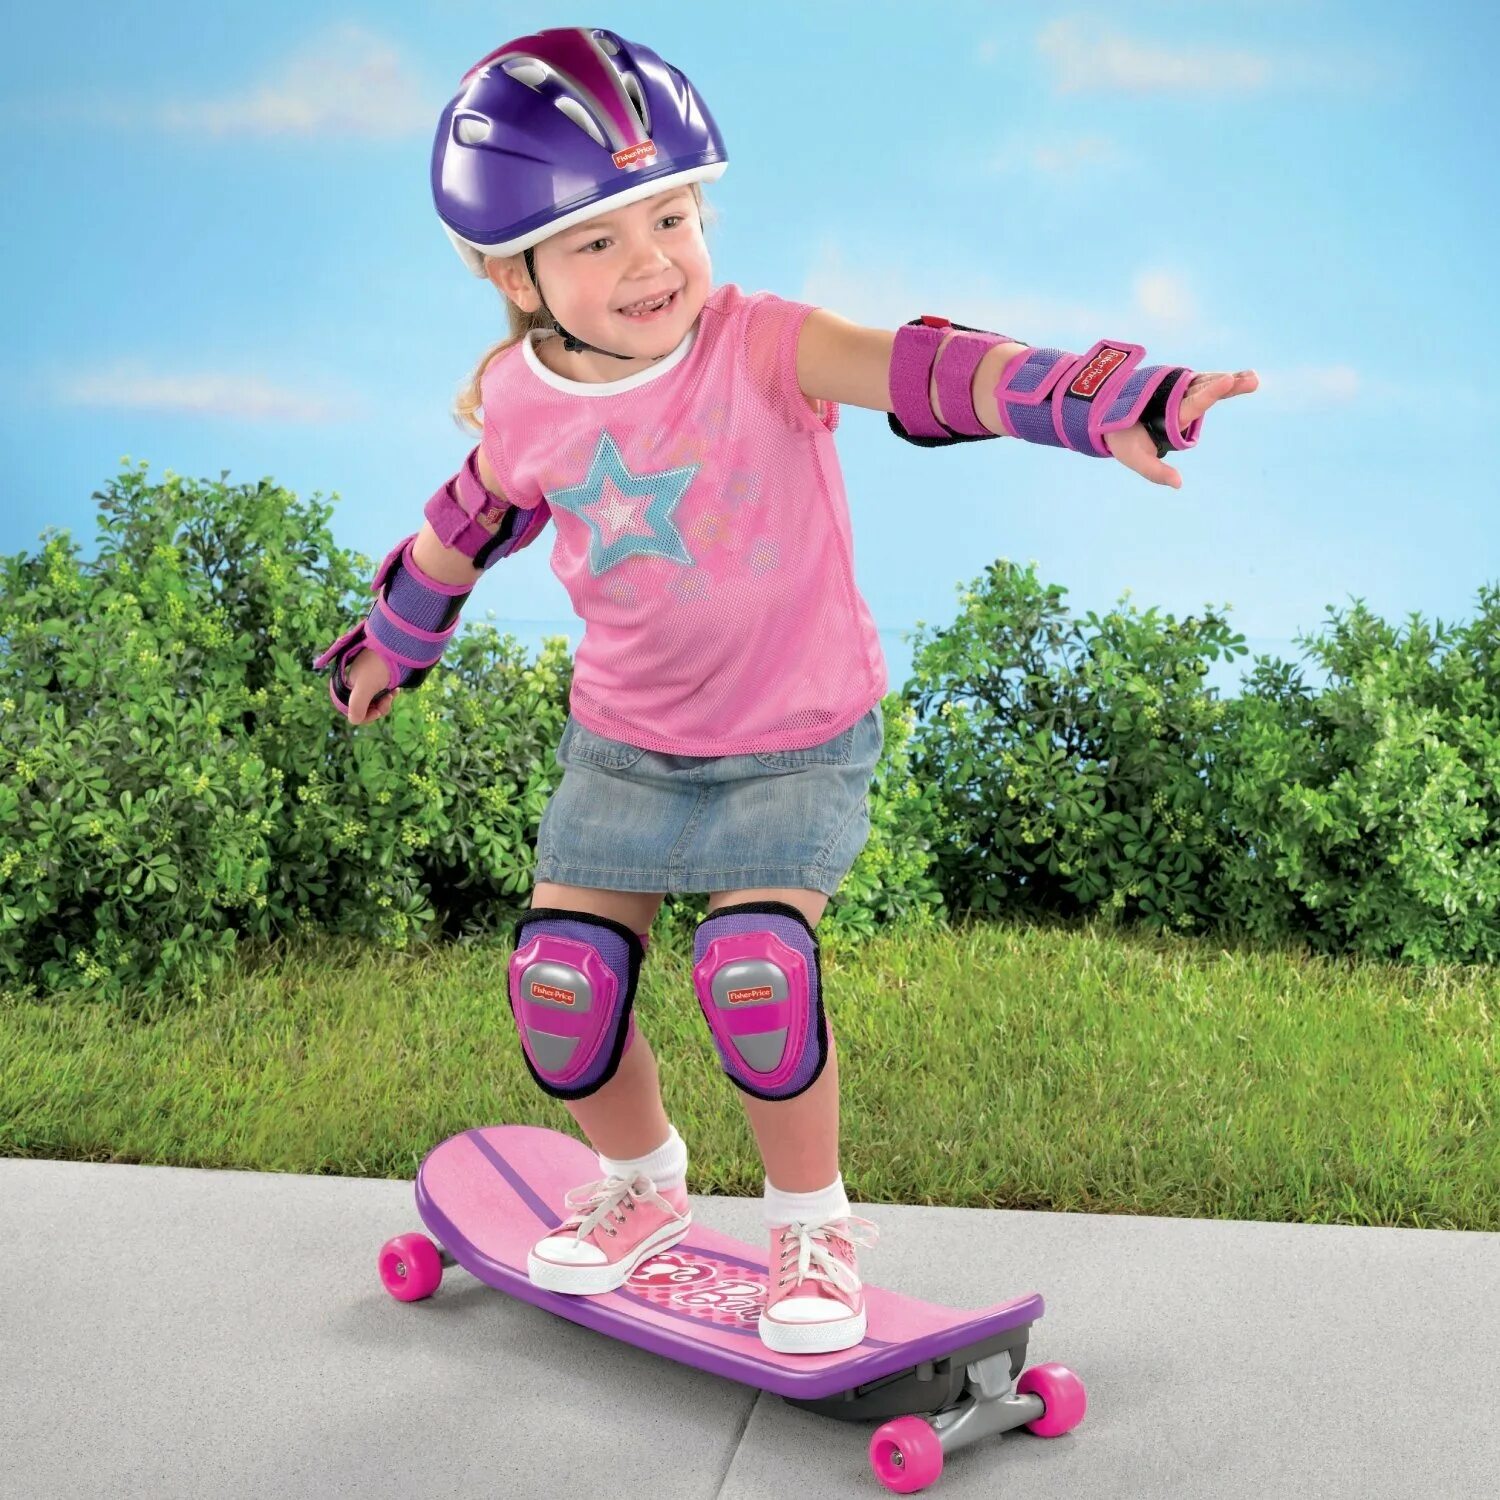 Включи ролик где есть. Скейт для малышей. Ролики детские ролики. Ребенок на скейте. Дети катаются на скейтборде.